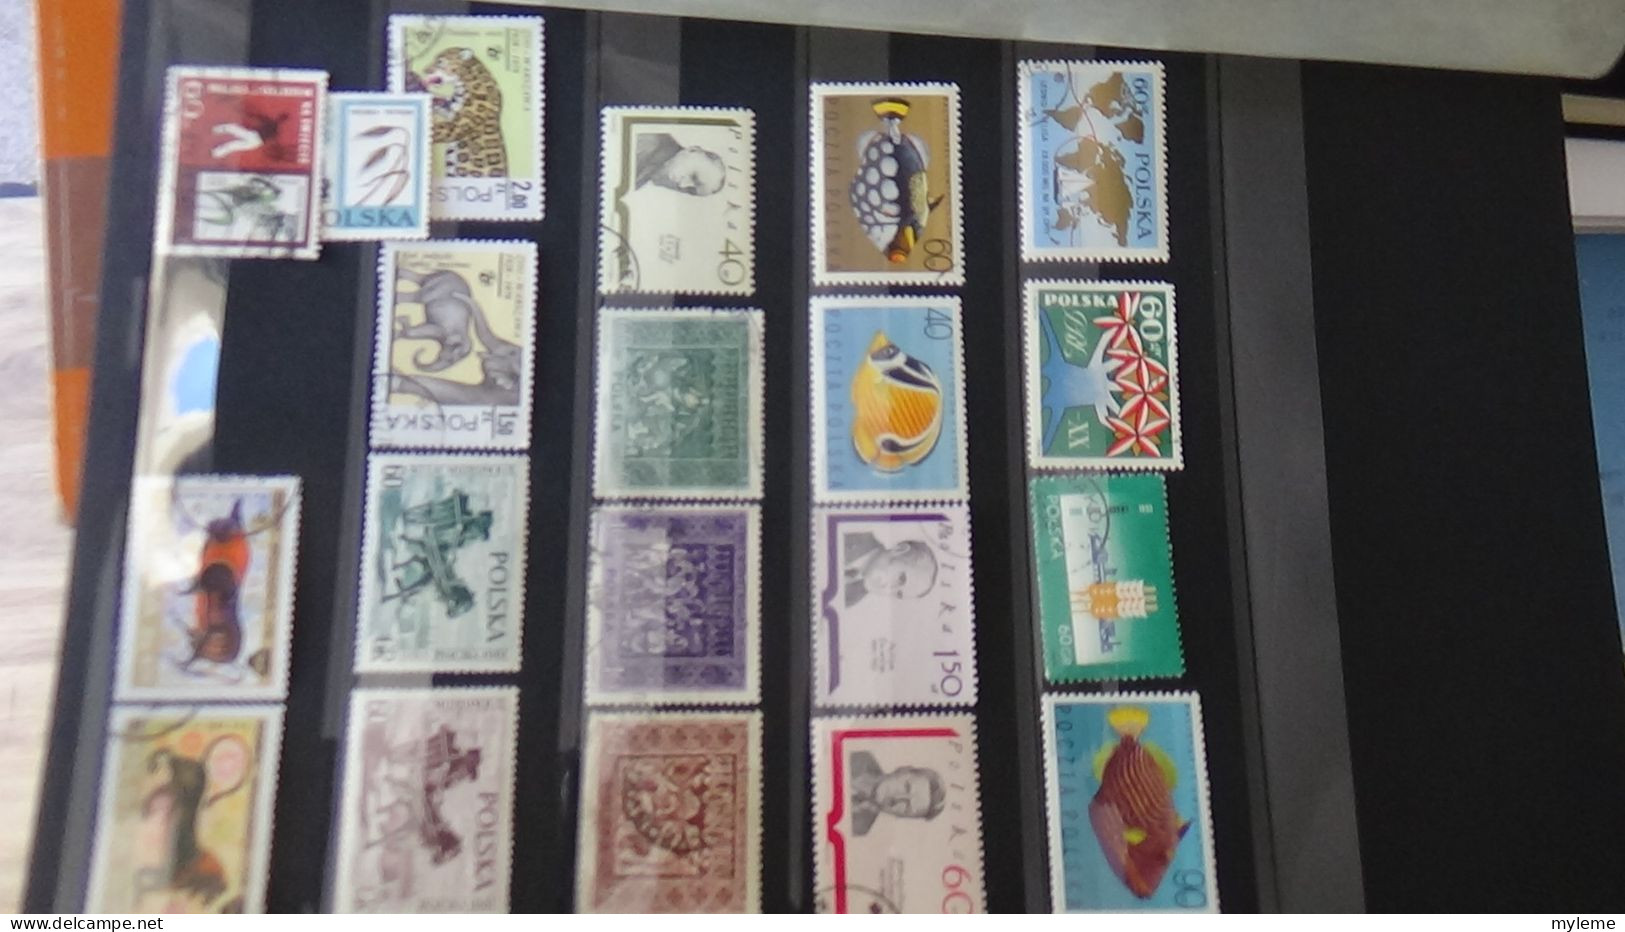 BF12 Ensemble de timbres de divers pays + plaquette de France **. Cote sympa  A saisir !!!.